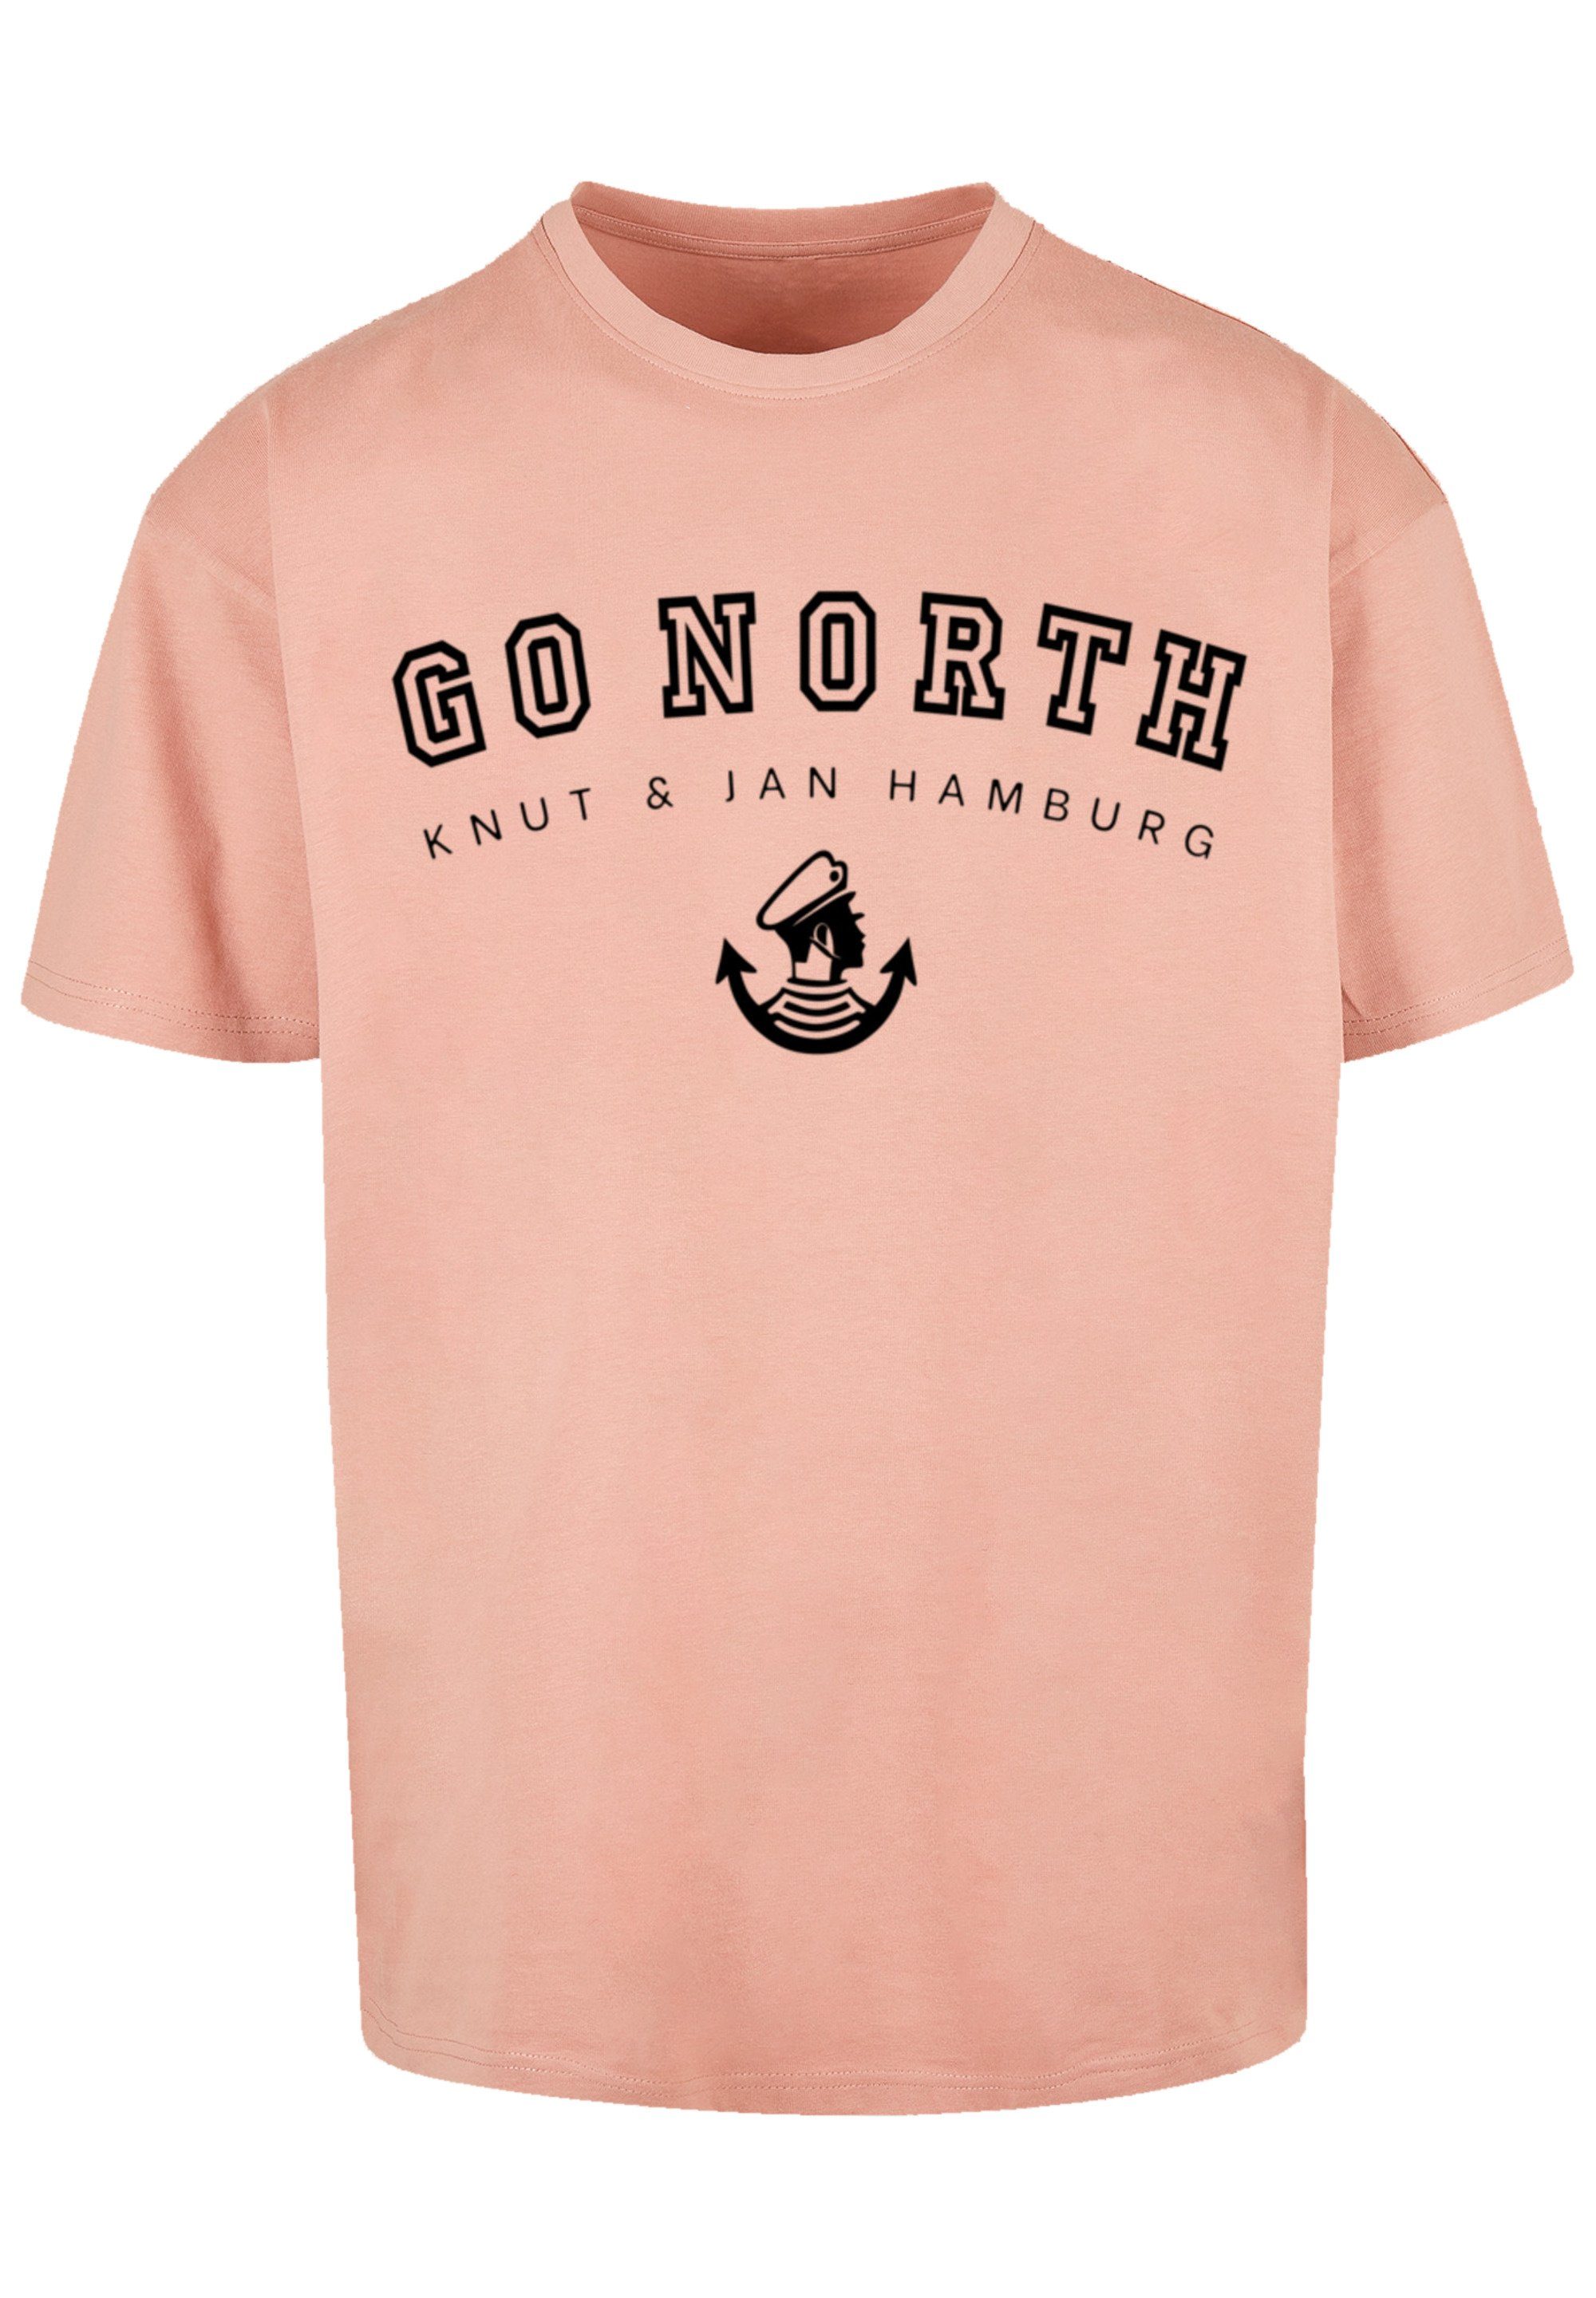 T-Shirt North Knut & Print Hamburg Go amber F4NT4STIC Jan